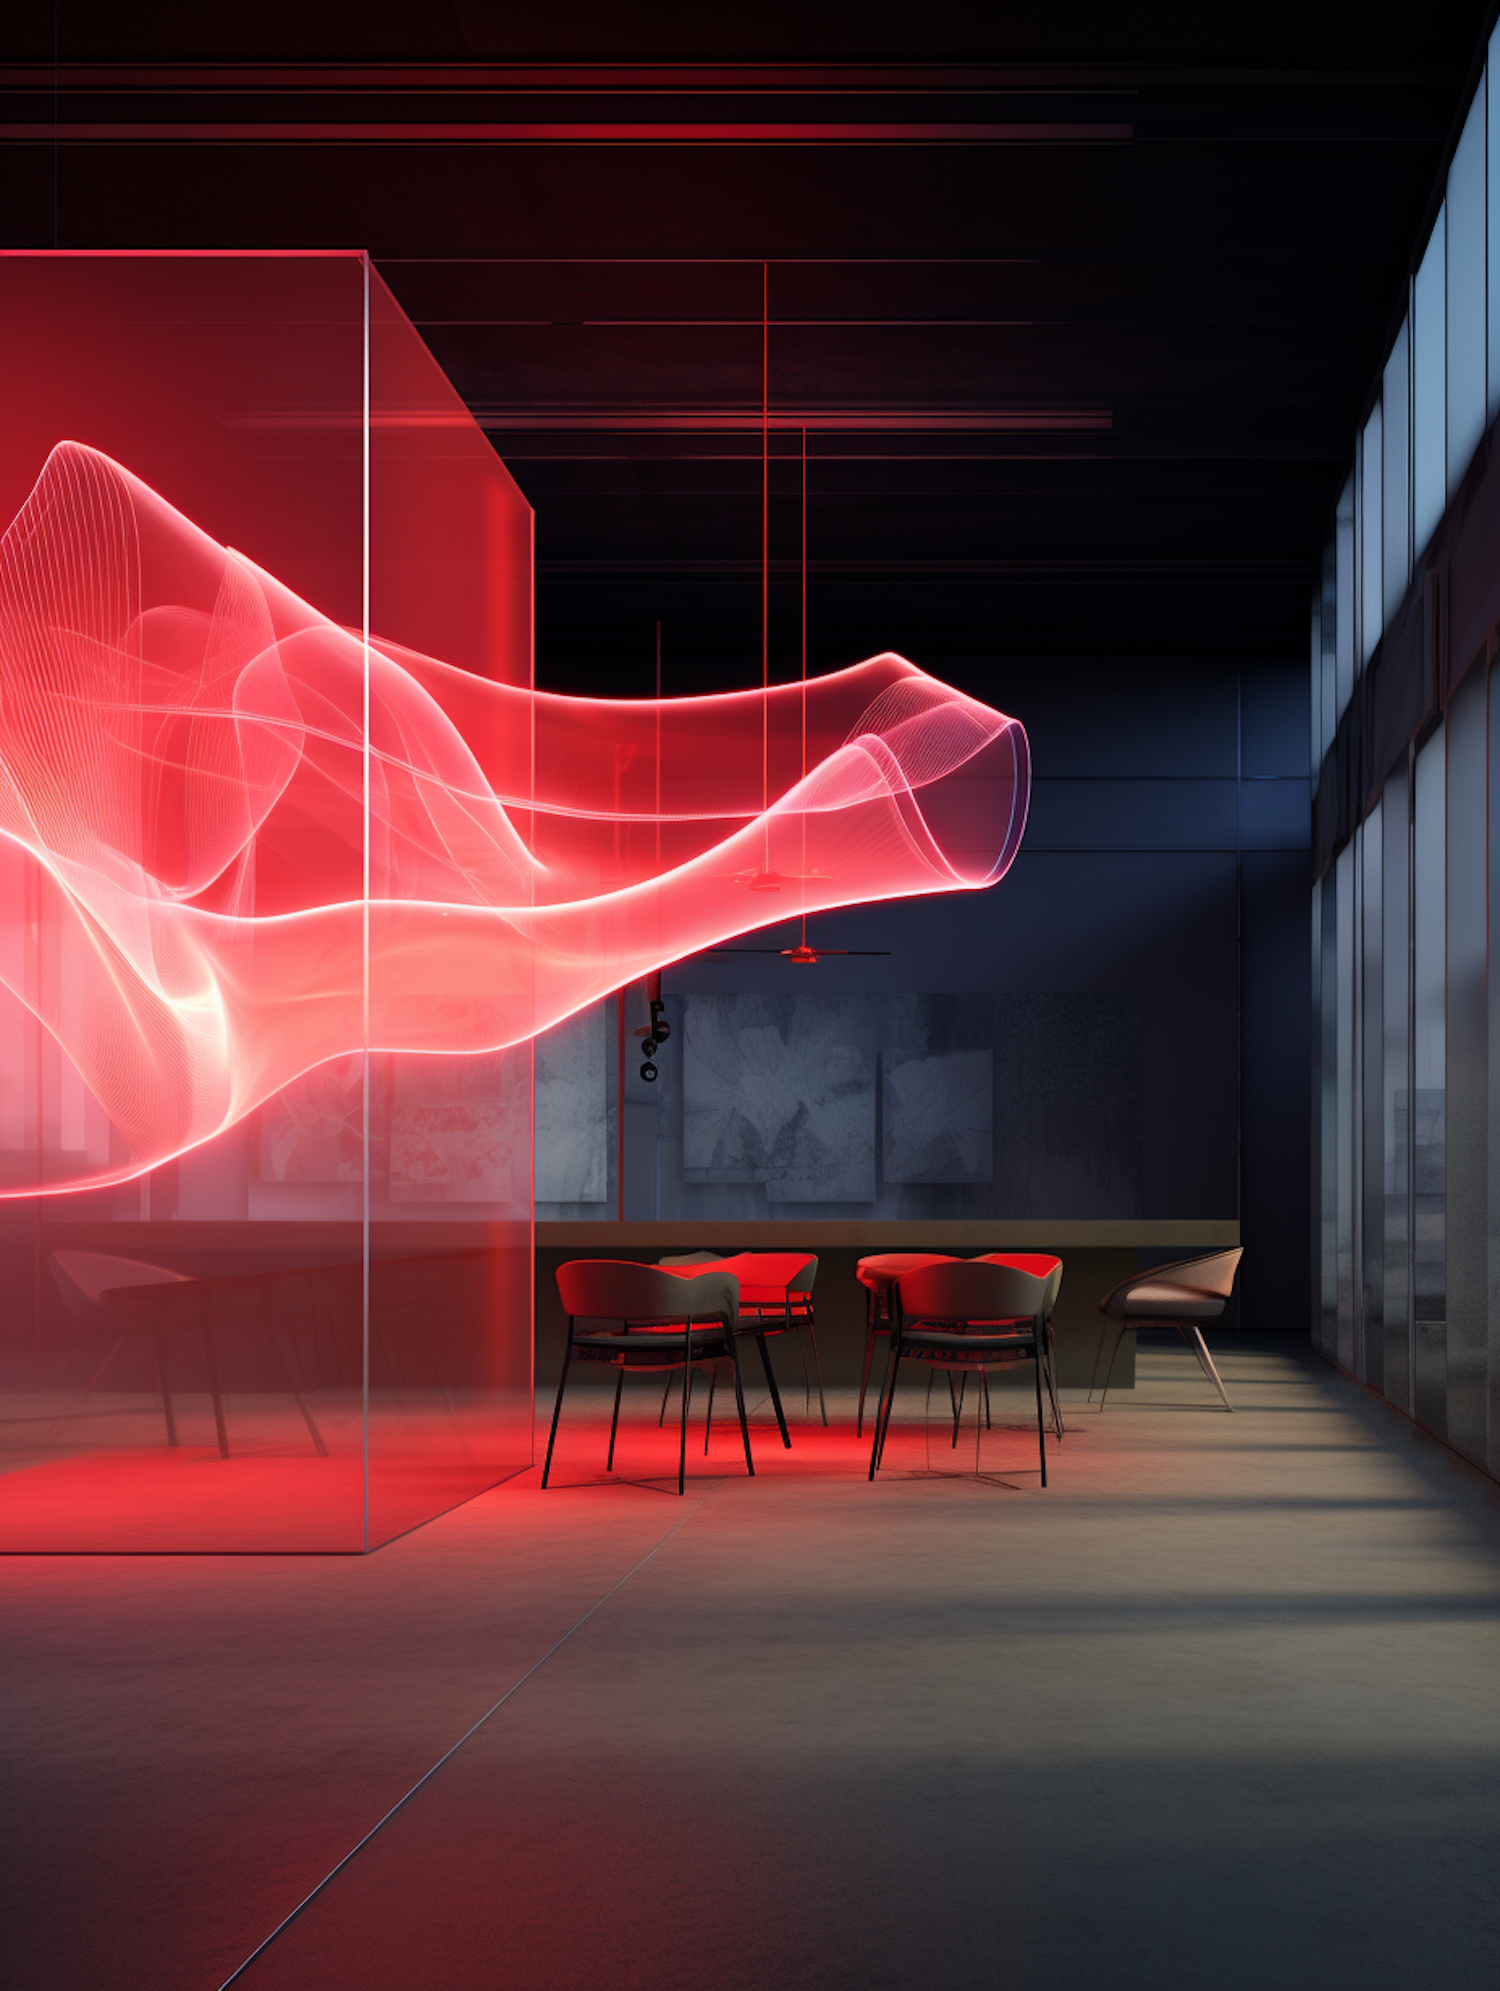 Waveform Glow: A Red-Lit Modern Interior